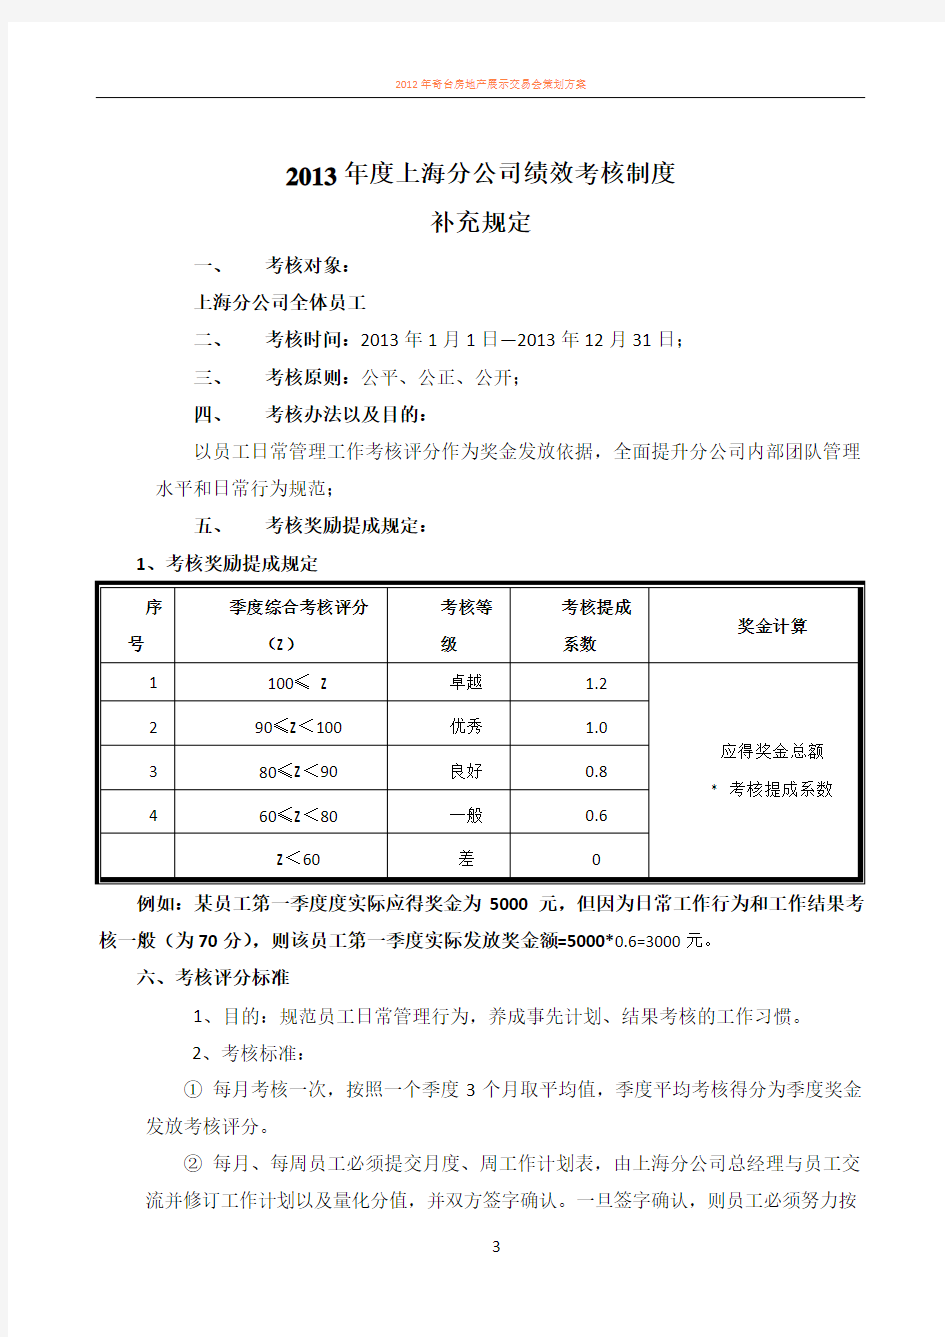 2013年度上海分公司绩效考核方案补充规定